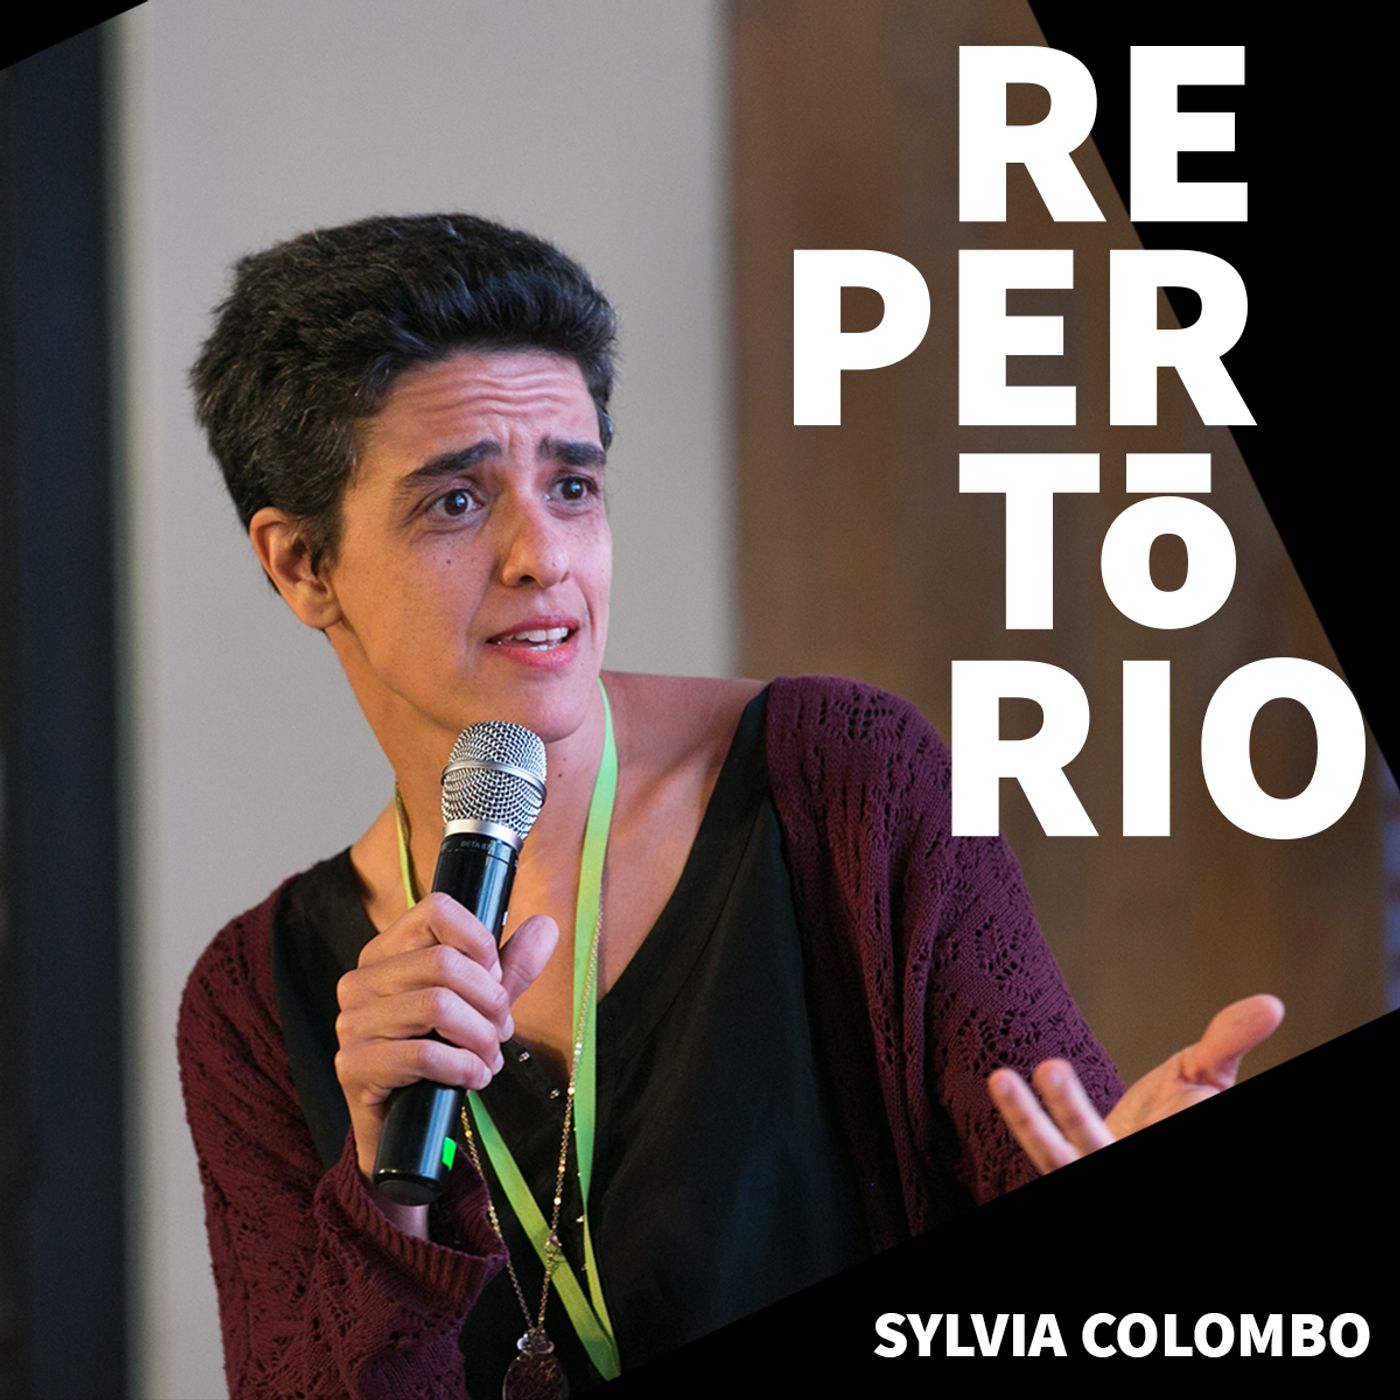 Repertório #14 Sylvia Colombo